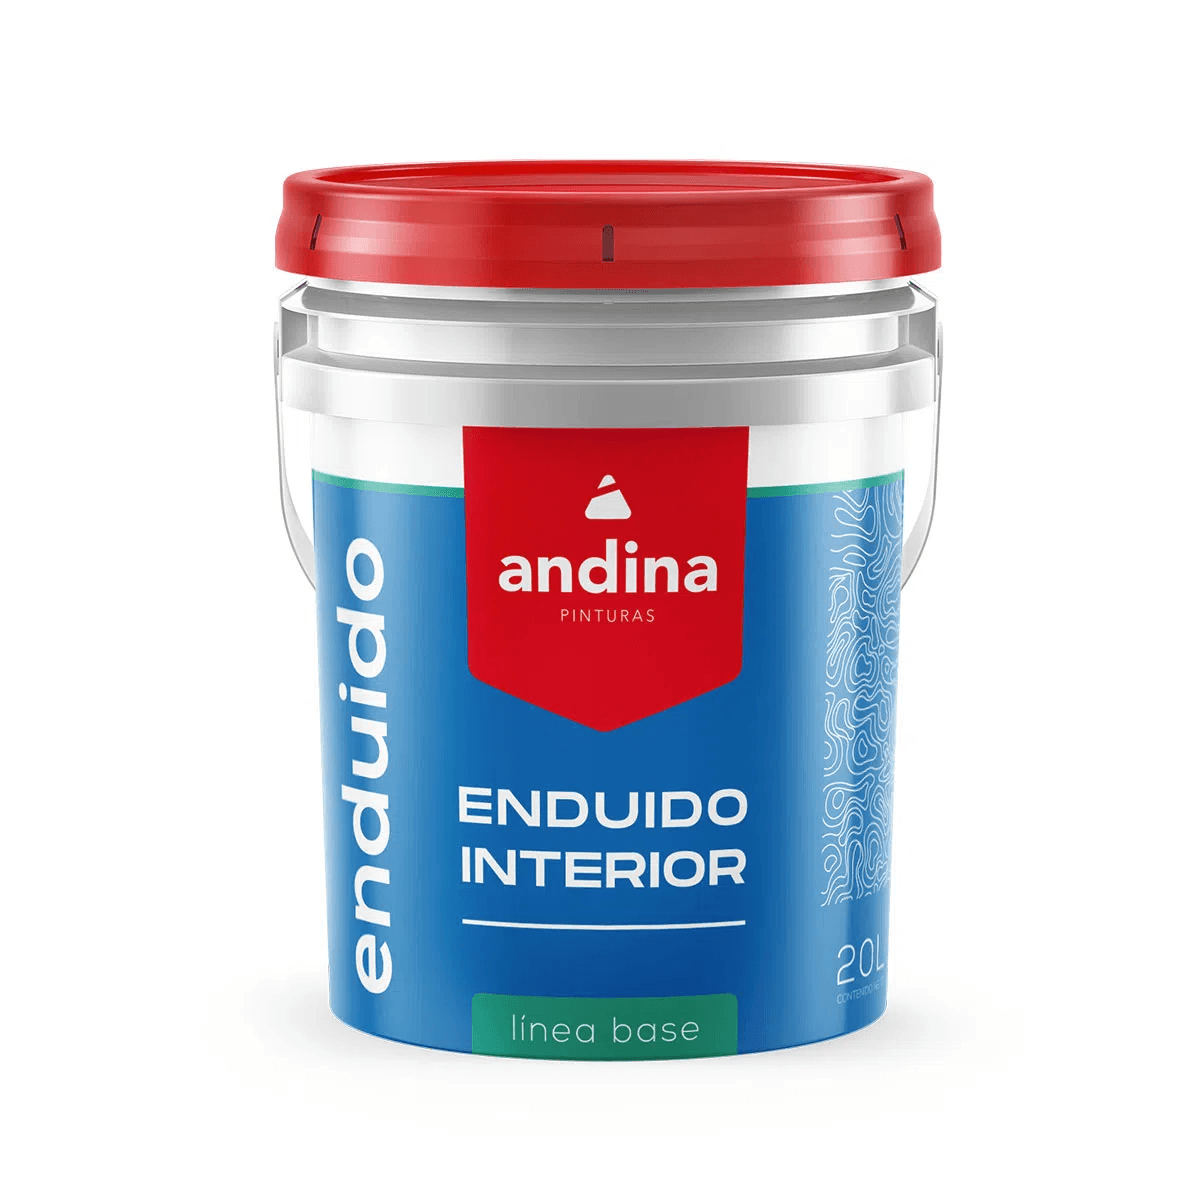 enduido-antihongo-andina